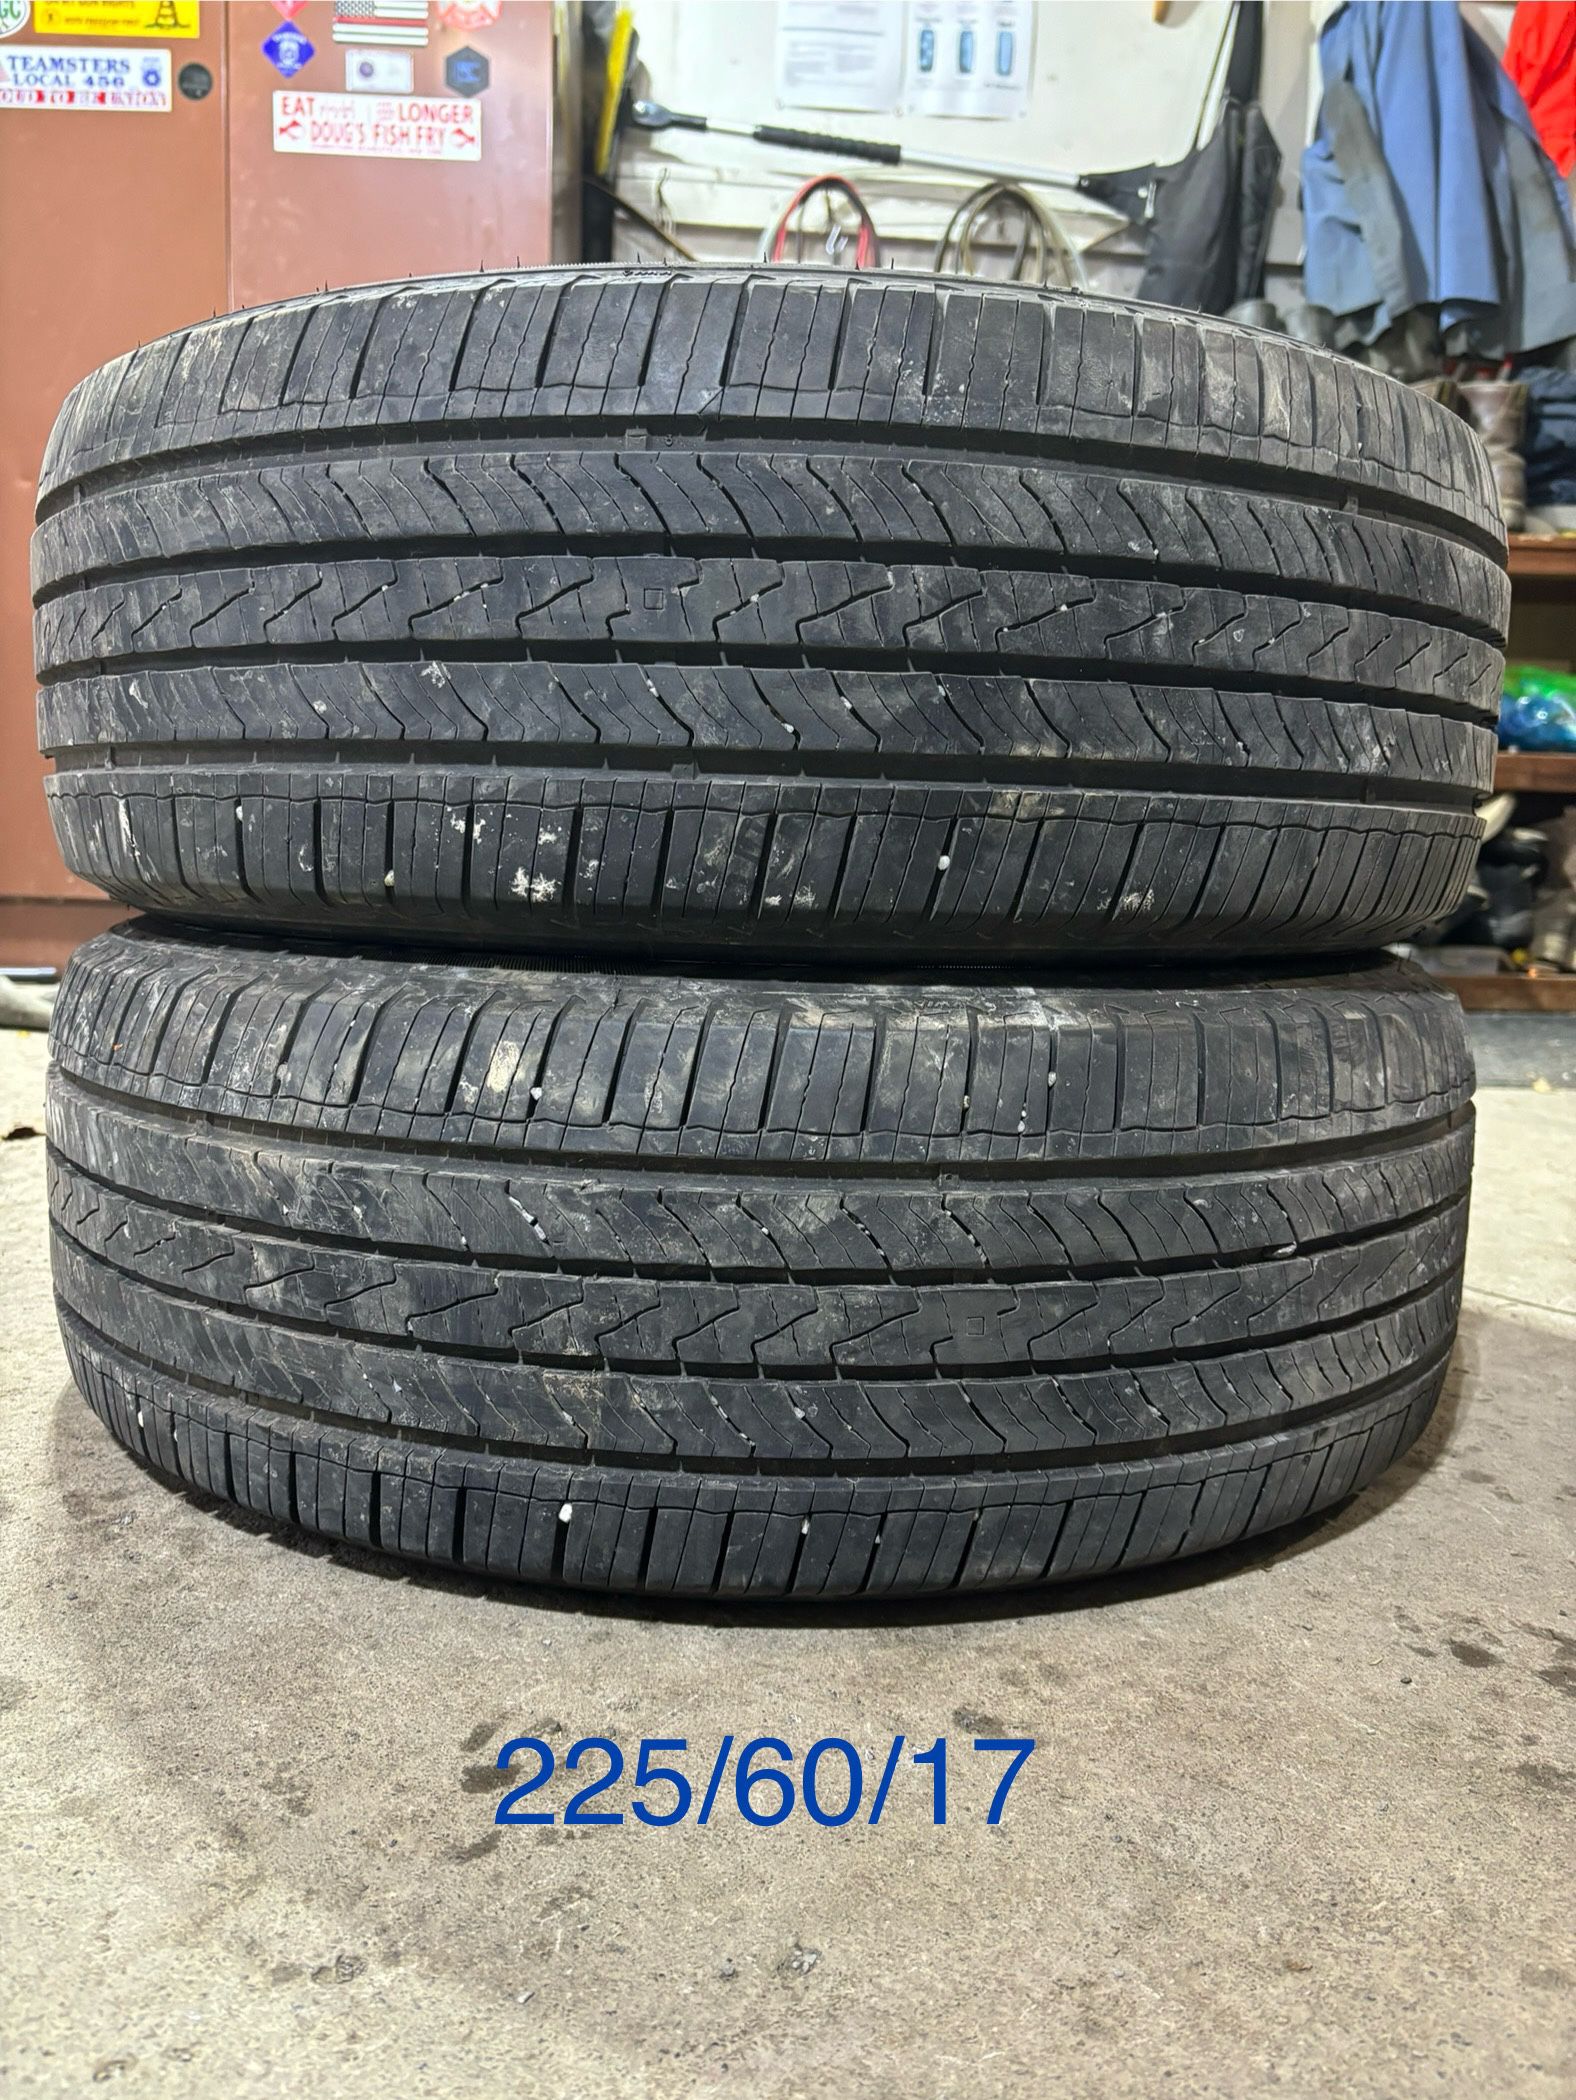 (2) - 225/60/17 Cooper Endeavor Plus Tires